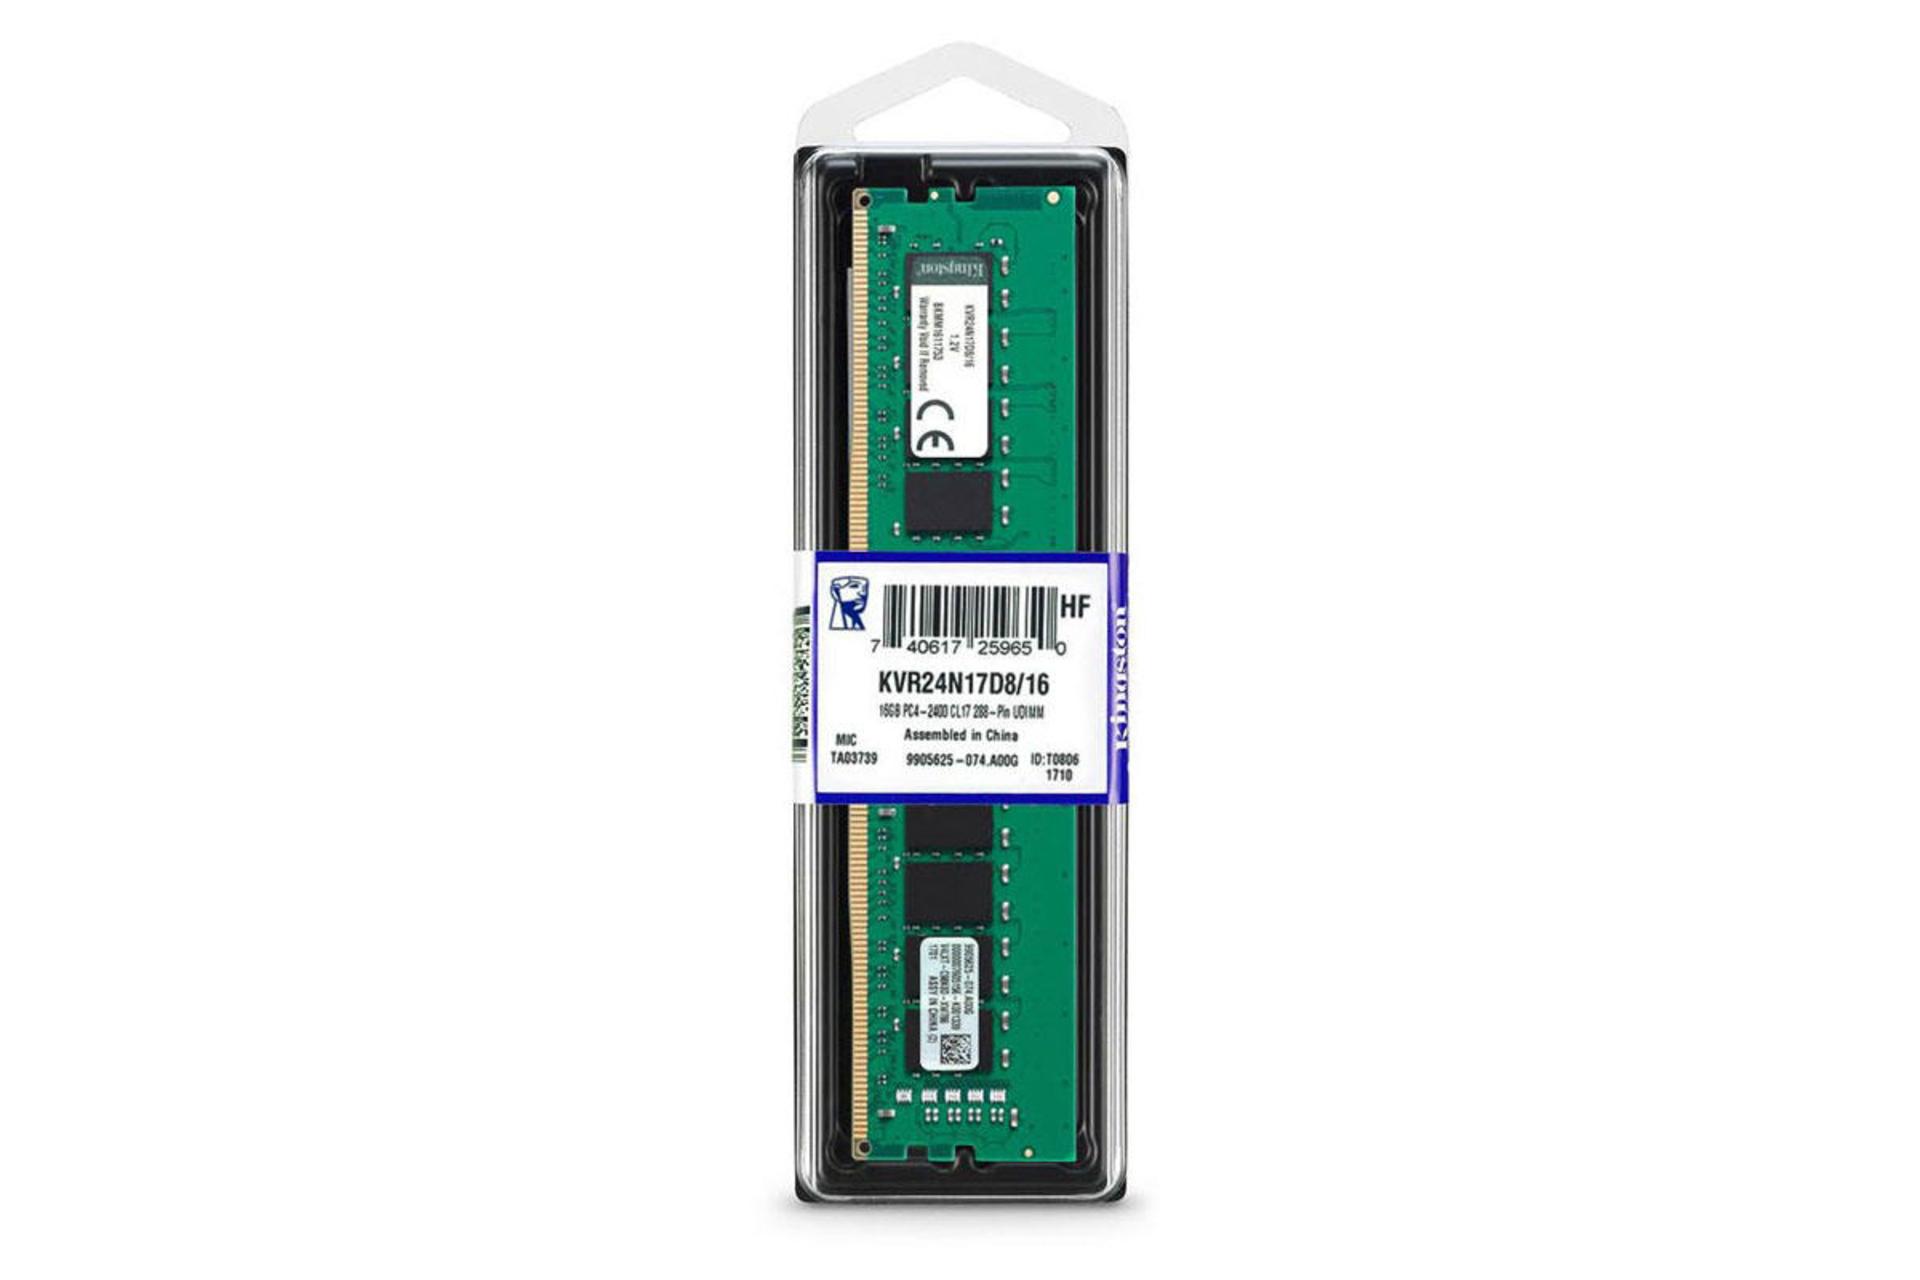 جعبه رم کینگستون KVR24N17D8/16 ValueRAM ظرفیت 16 گیگابایت از نوع DDR4-2400